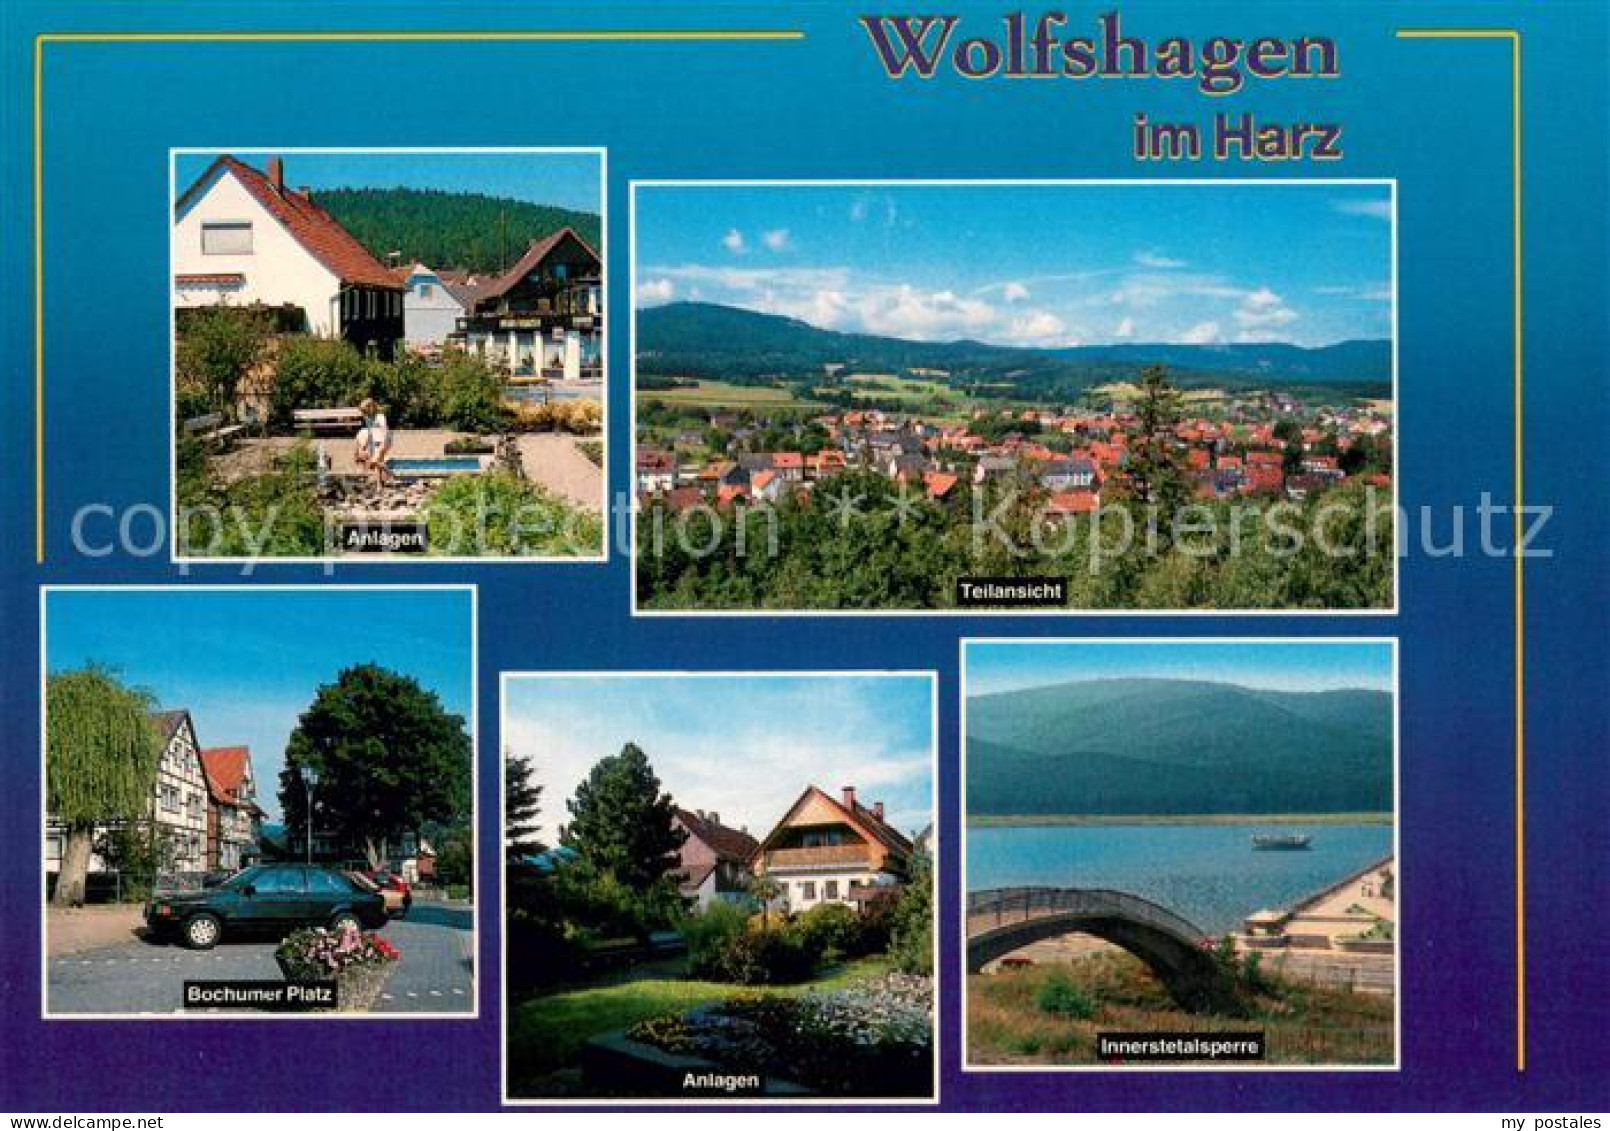 73671181 Wolfshagen Harz Panorama Parkanlagen Bochumer Platz Innerstetalsperre W - Langelsheim